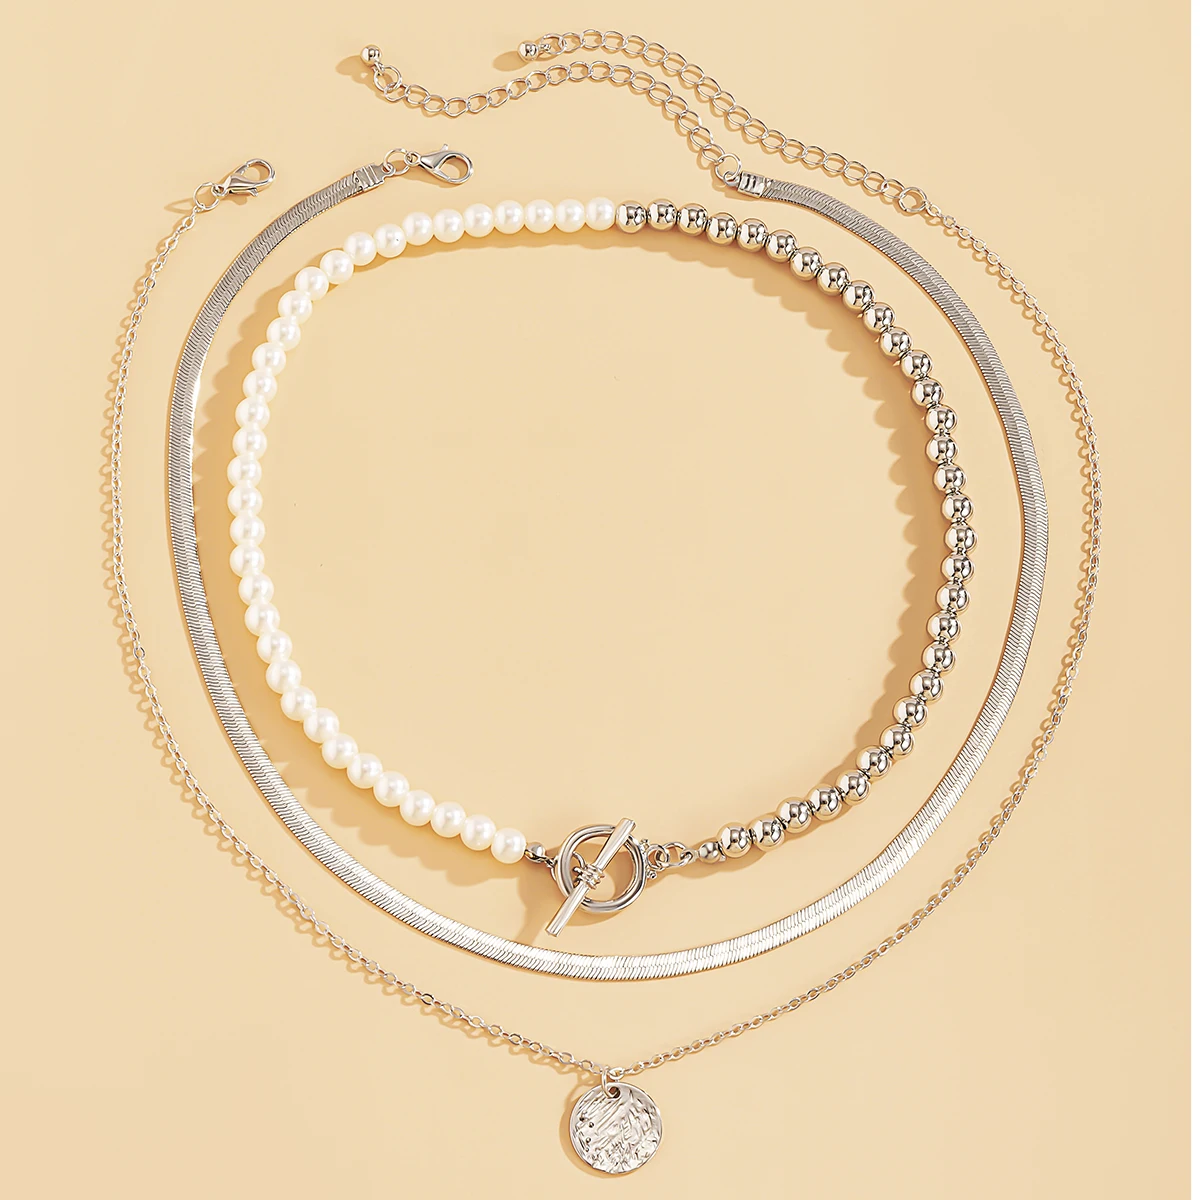 Многослойная цепочка чокер SHIXIN с жемчужинами ожерелье для женщин змея на шею - Фото №1